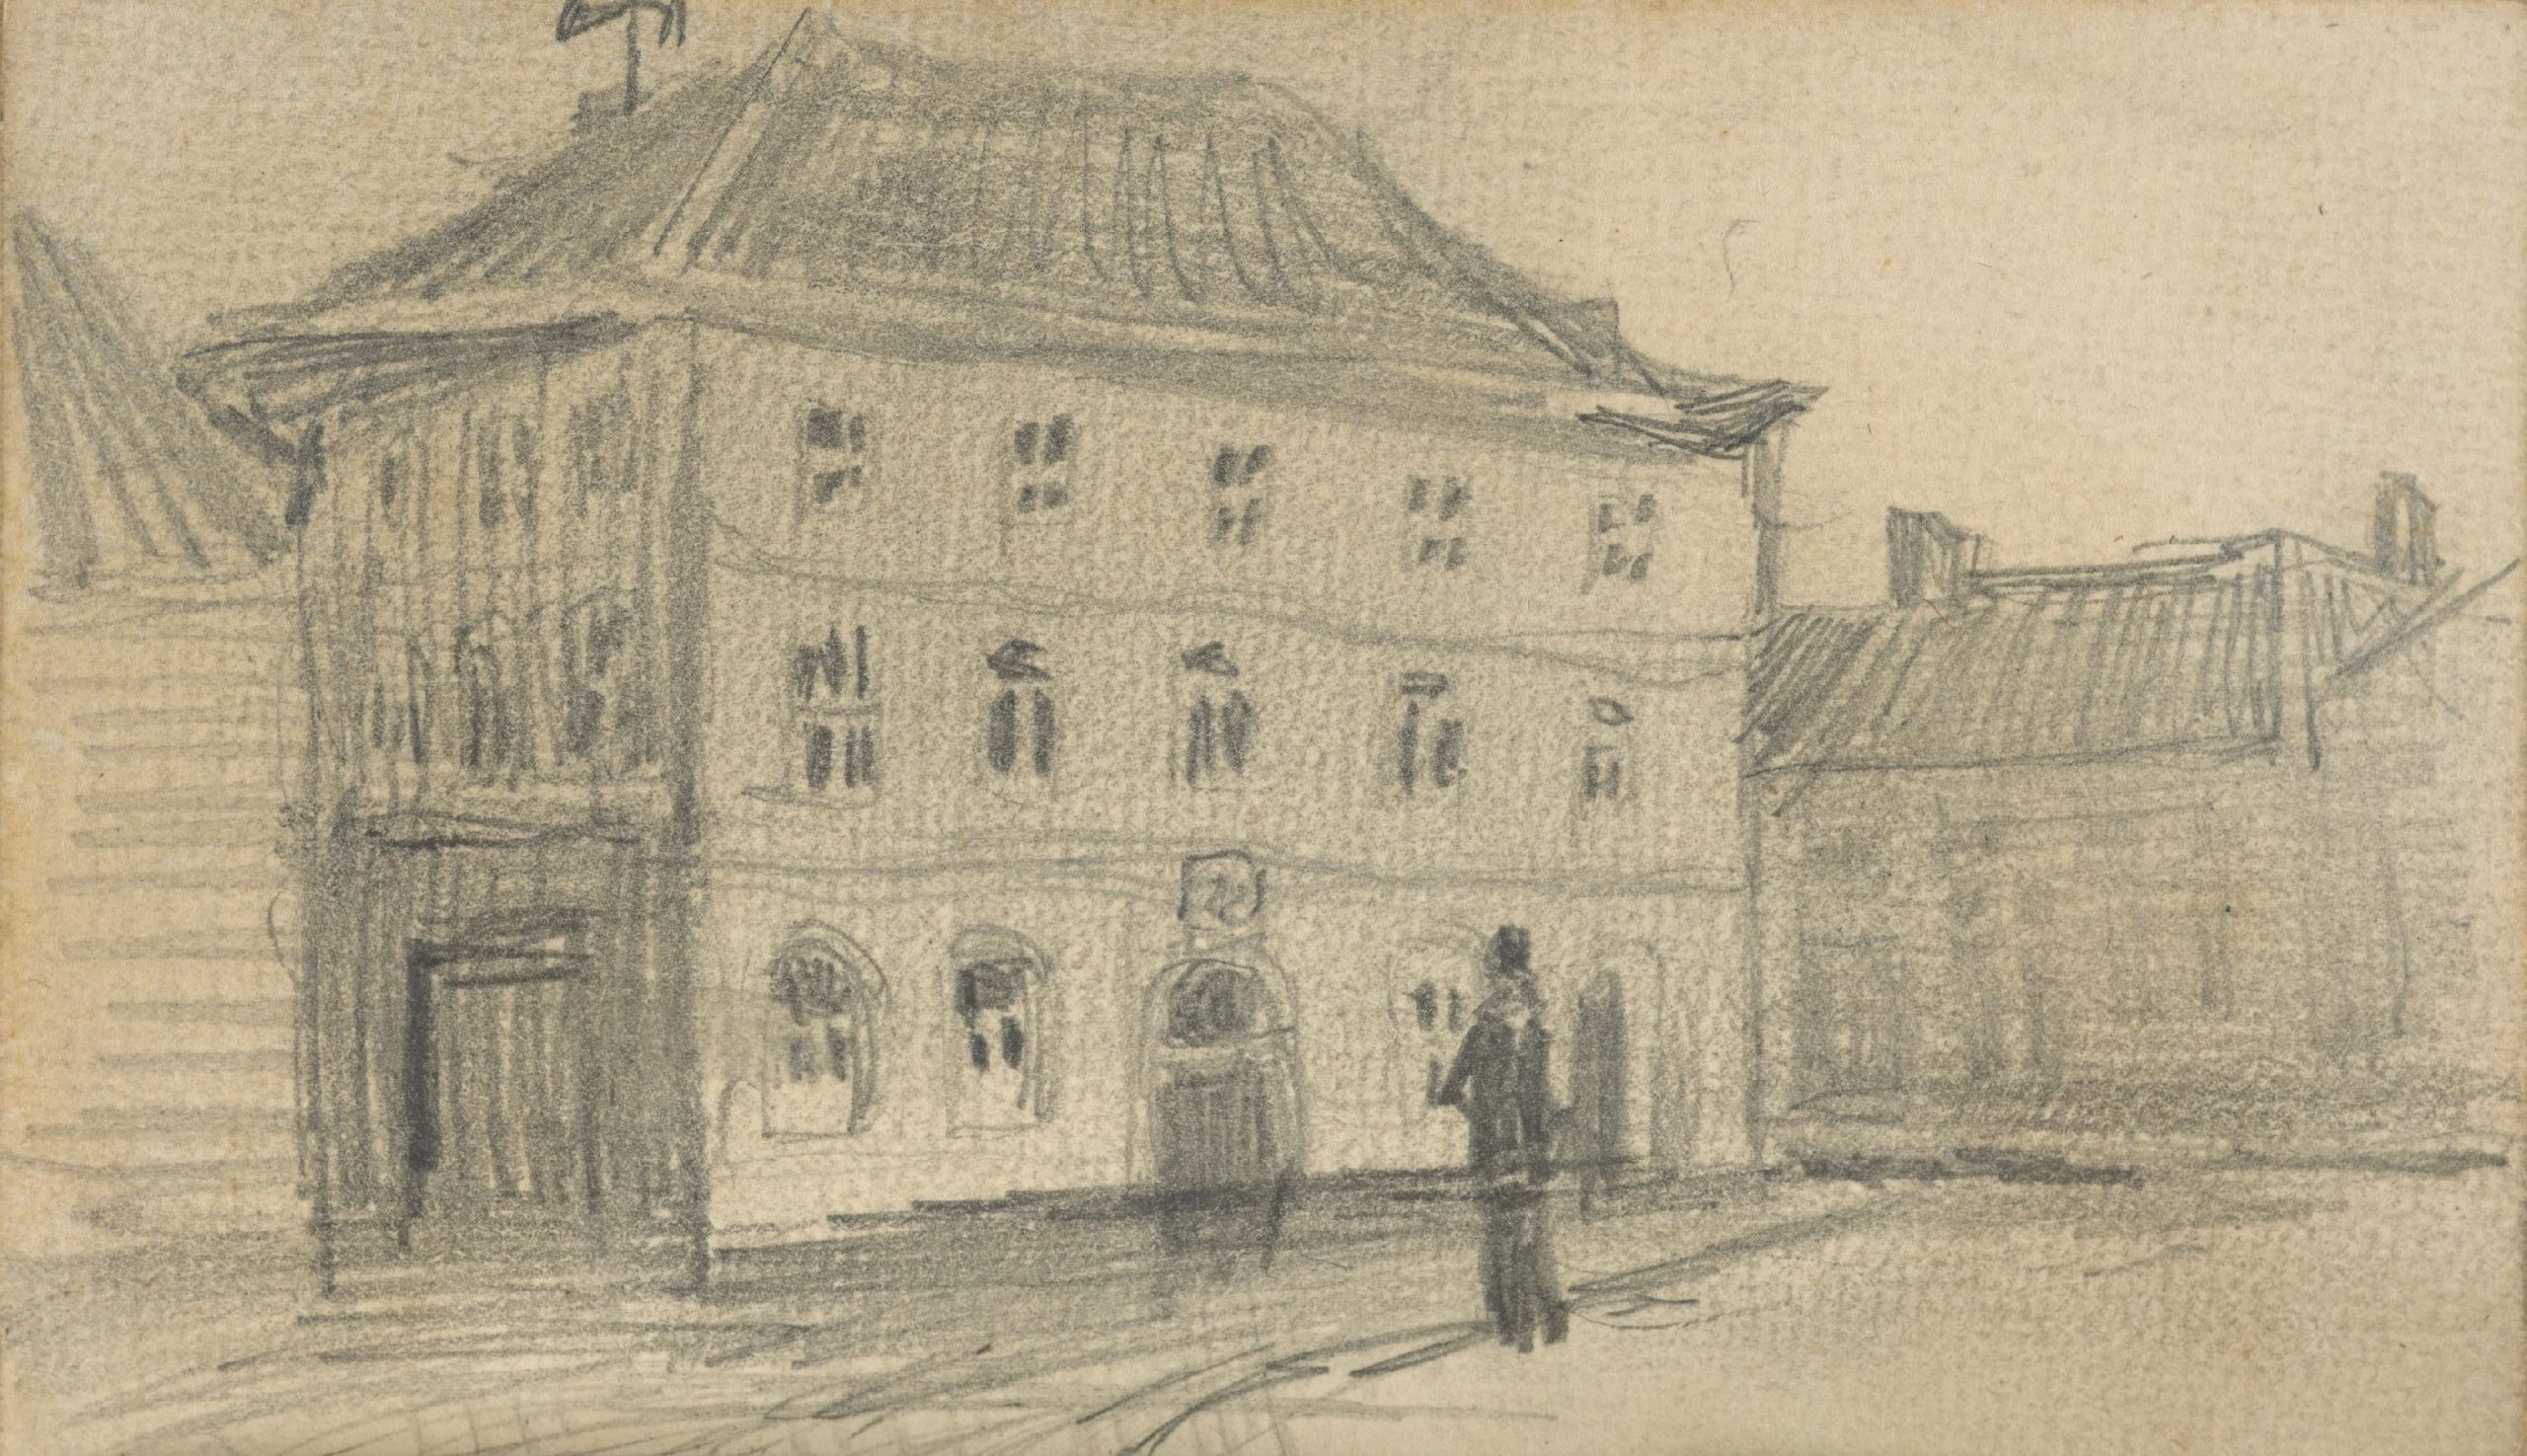 Postkantoor in Eindhoven Vincent van Gogh (1853 - 1890), Nuenen, november 1884-september 1885